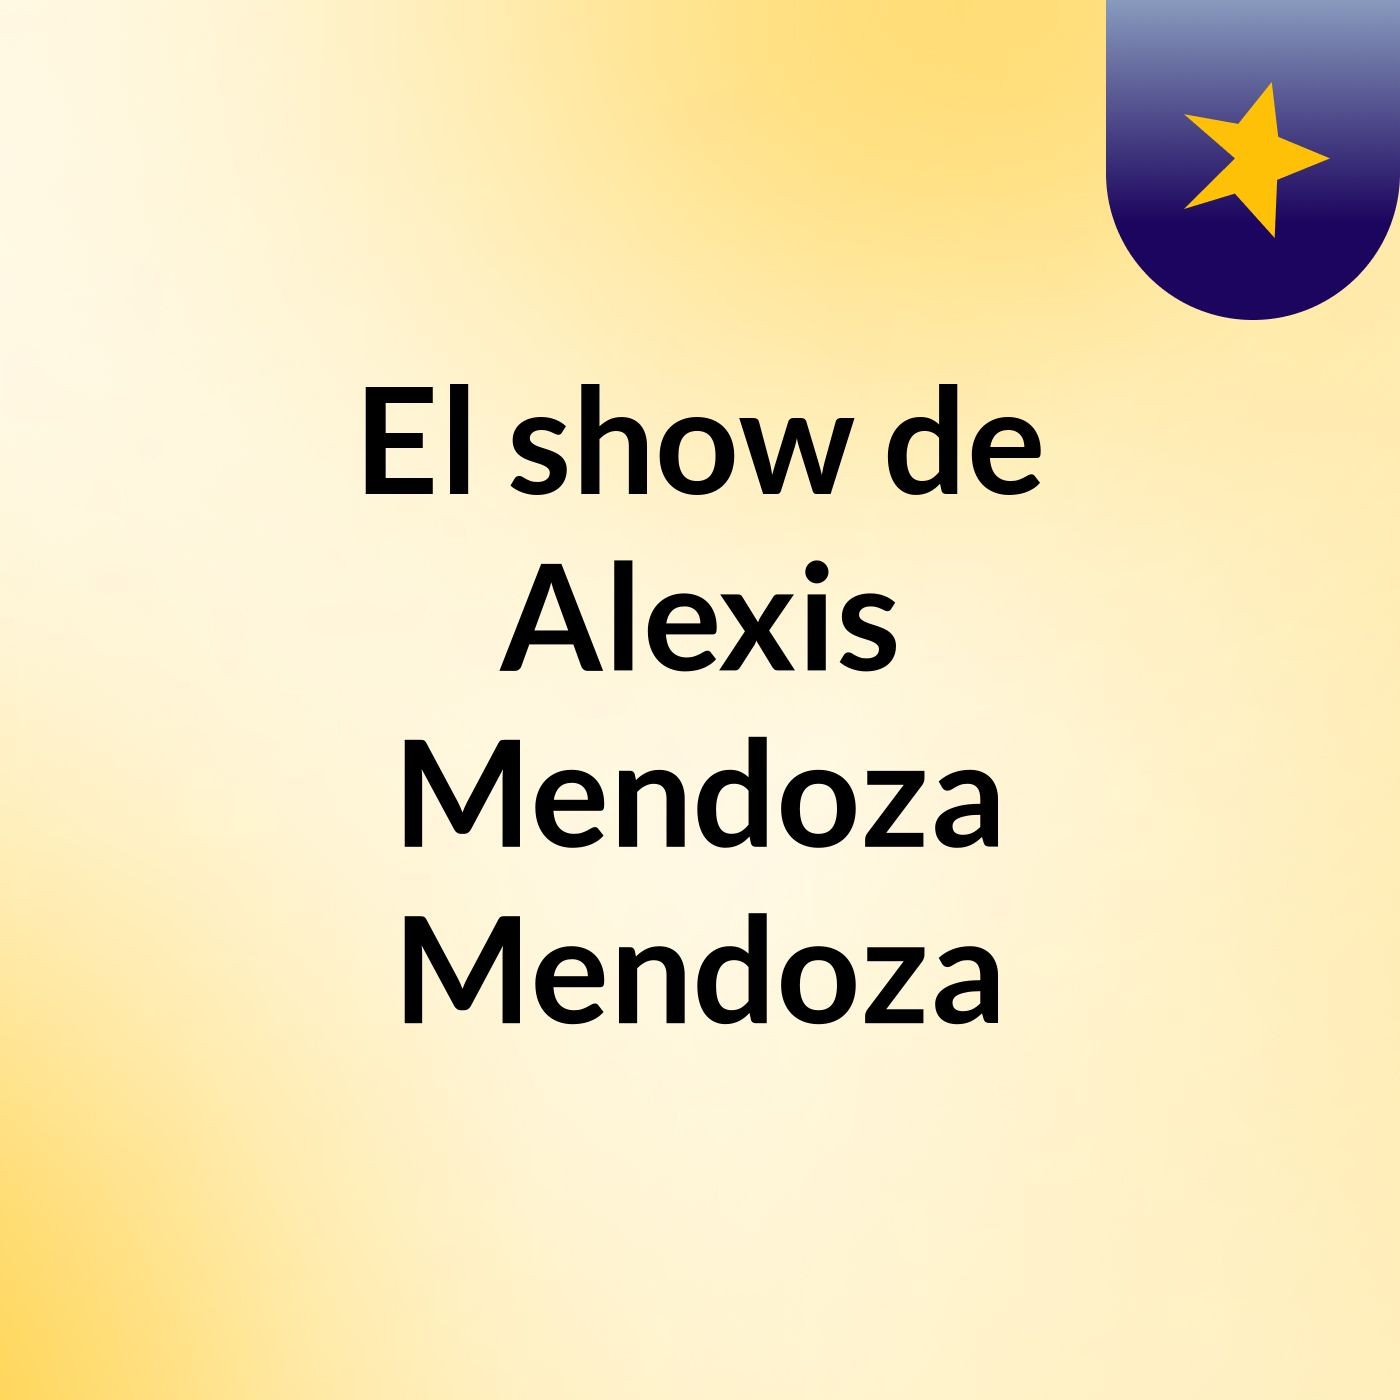 El show de Alexis Mendoza Mendoza